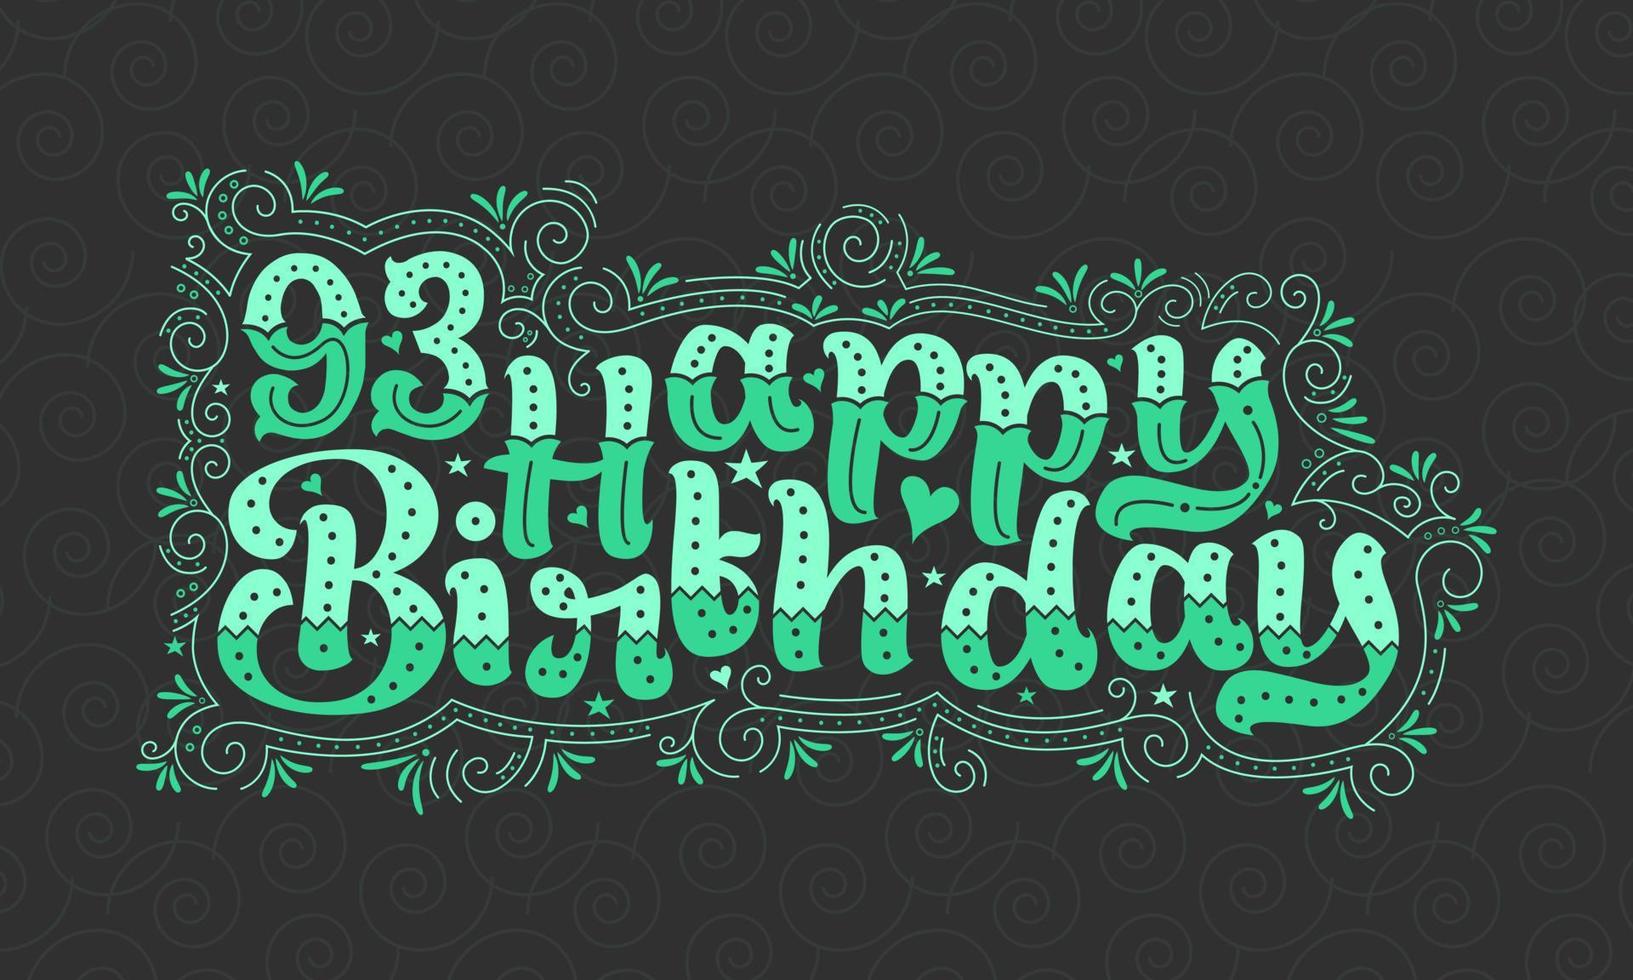 93:e grattis på födelsedagen bokstäver, 93 års födelsedag vacker typografidesign med gröna prickar, linjer och blad. vektor